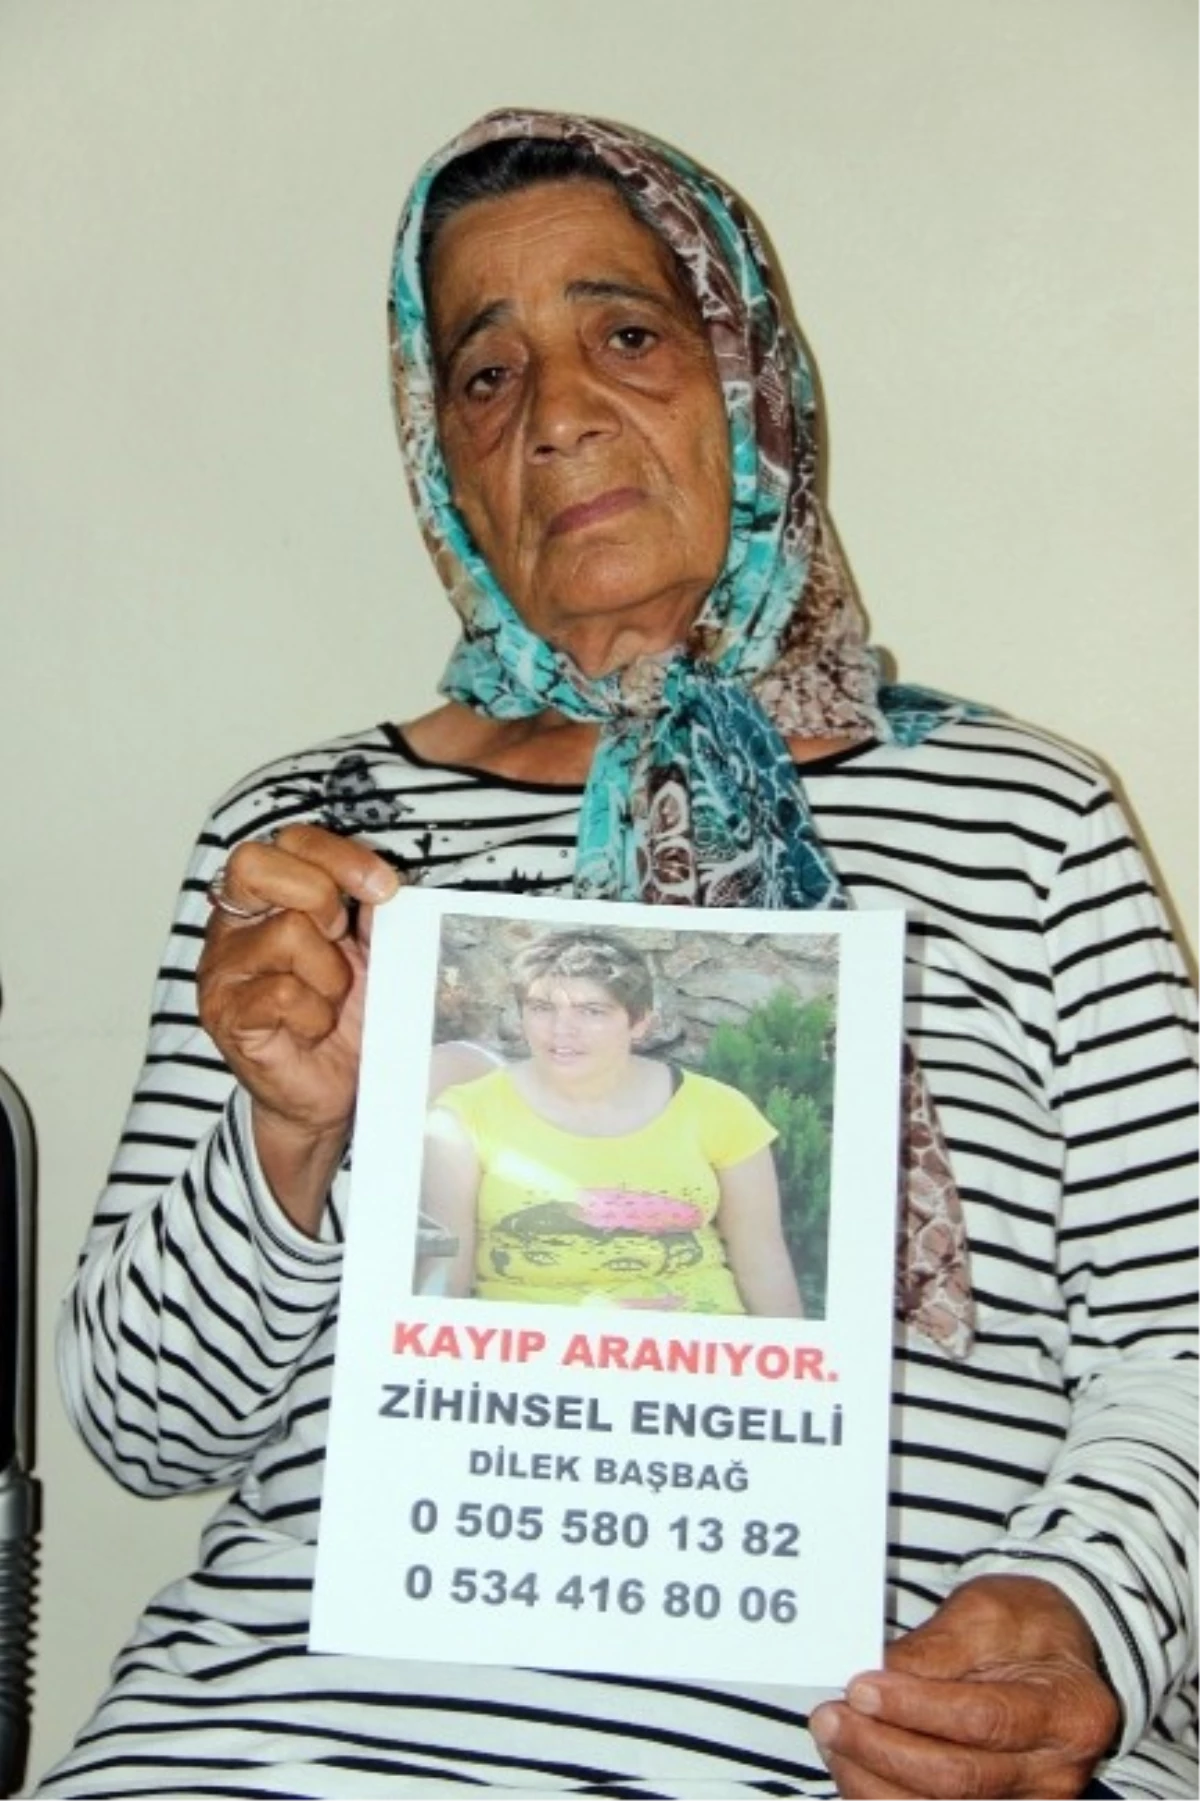 İl İl Gezerek 4 Yıldır Kayıp Kızını Arıyor